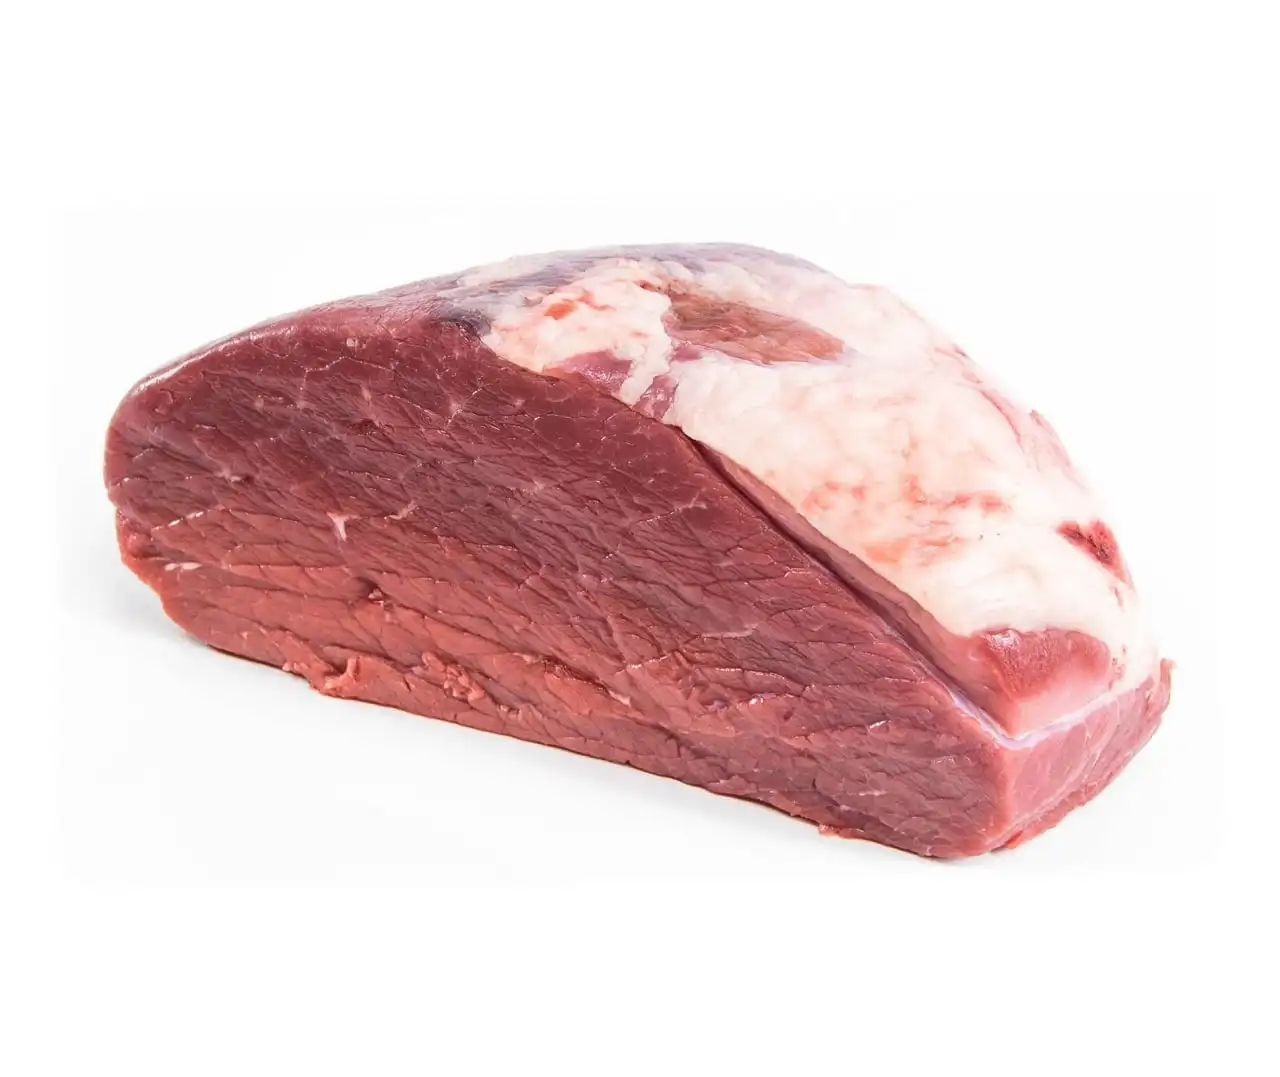 Carne de ternera congelada Halal de exportación, carne de ternera cortada sin hueso congelada, precio al por mayor, carne de ternera Halal lista para vender